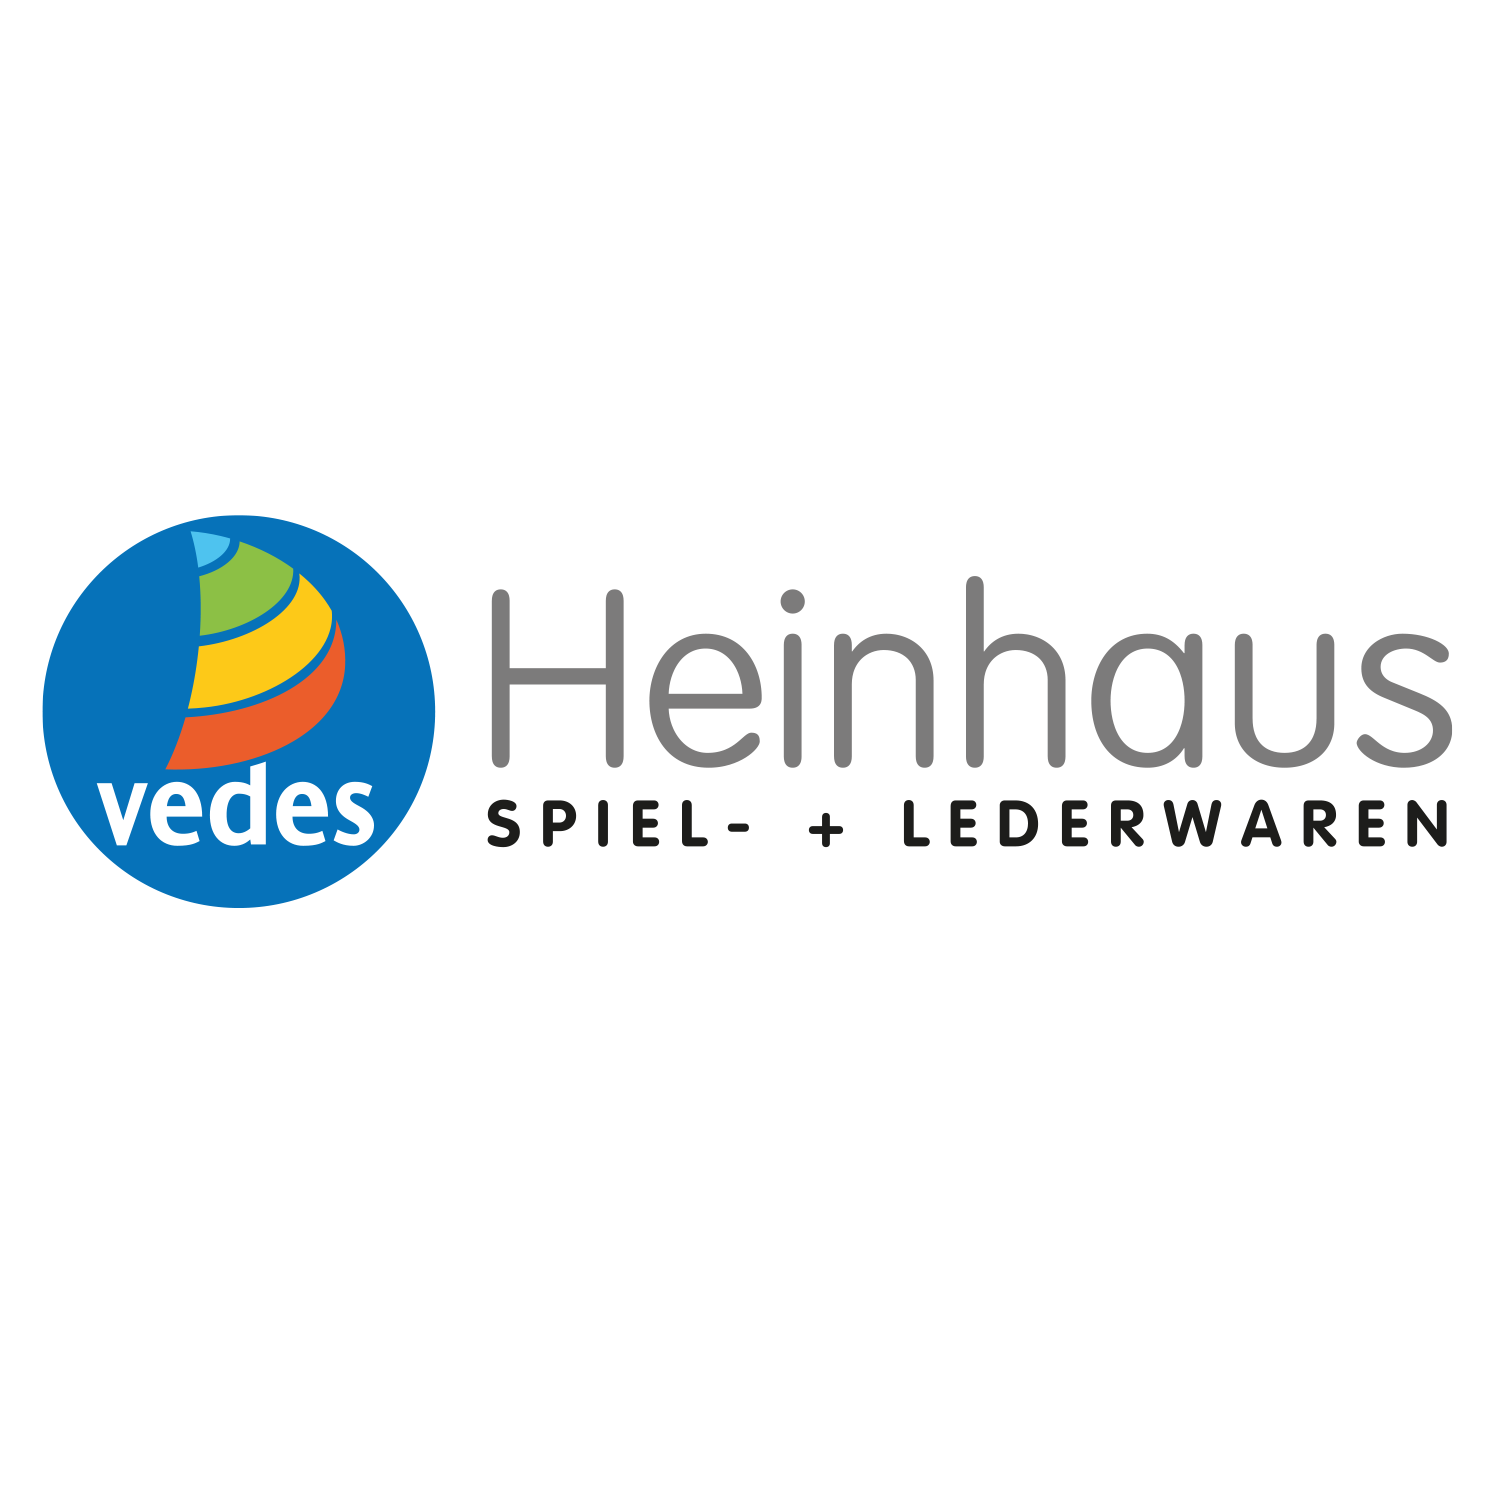 Heinhaus Spiel- und Lederwaren in Hückeswagen - Logo